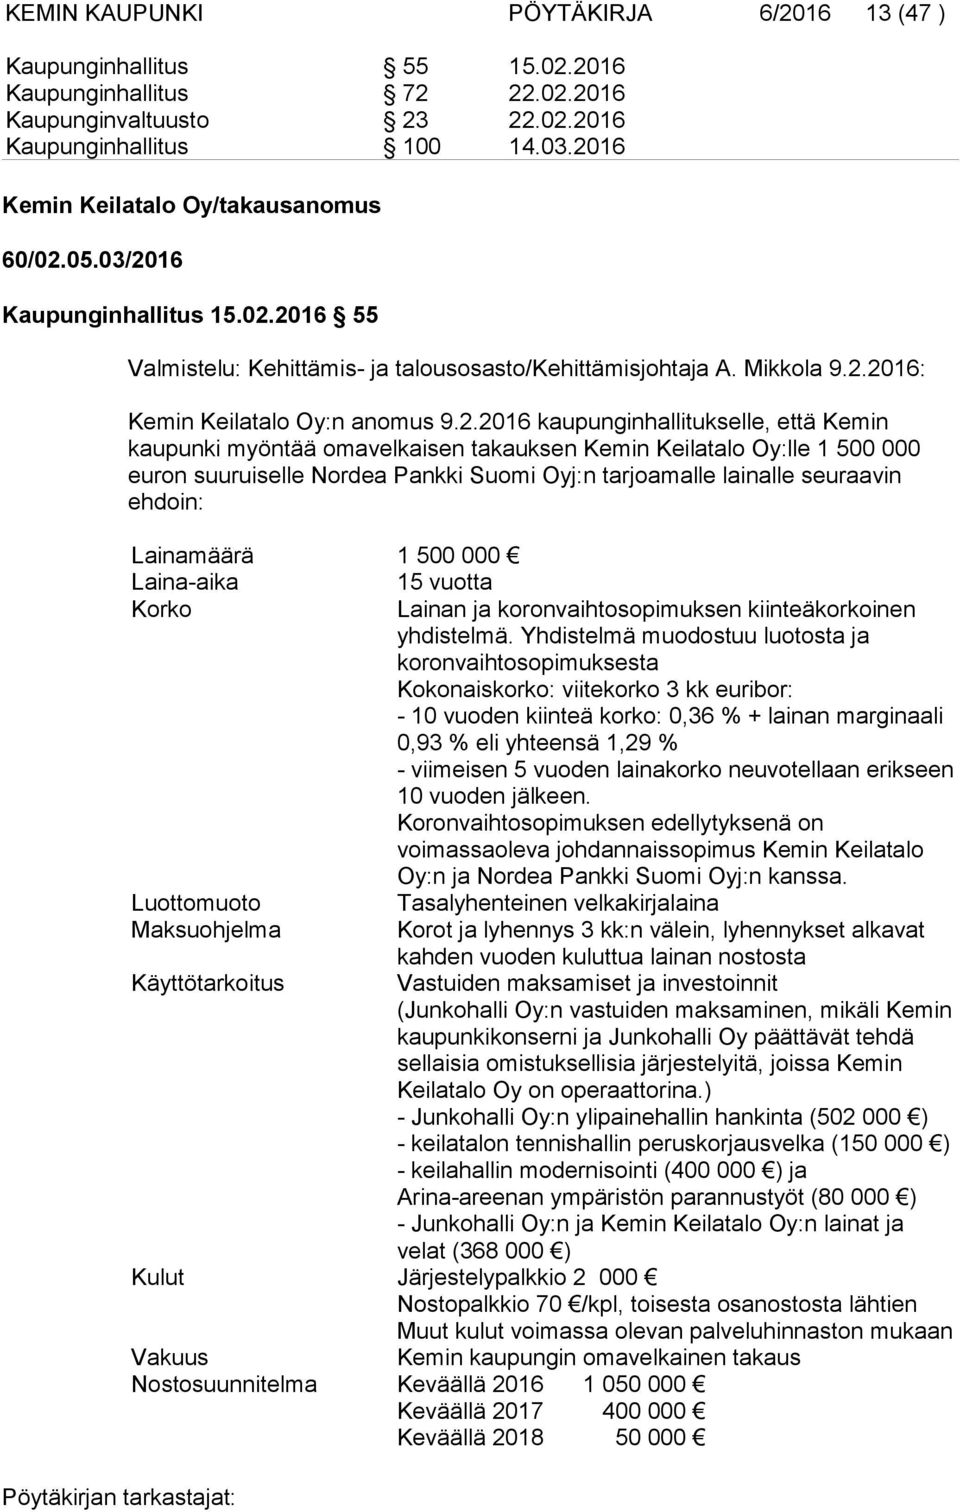 9.2.2016 kaupunginhallitukselle, että Kemin kaupunki myöntää omavelkaisen takauksen Kemin Keilatalo Oy:lle 1 500 000 euron suuruiselle Nordea Pankki Suomi Oyj:n tarjoamalle lainalle seuraavin ehdoin: